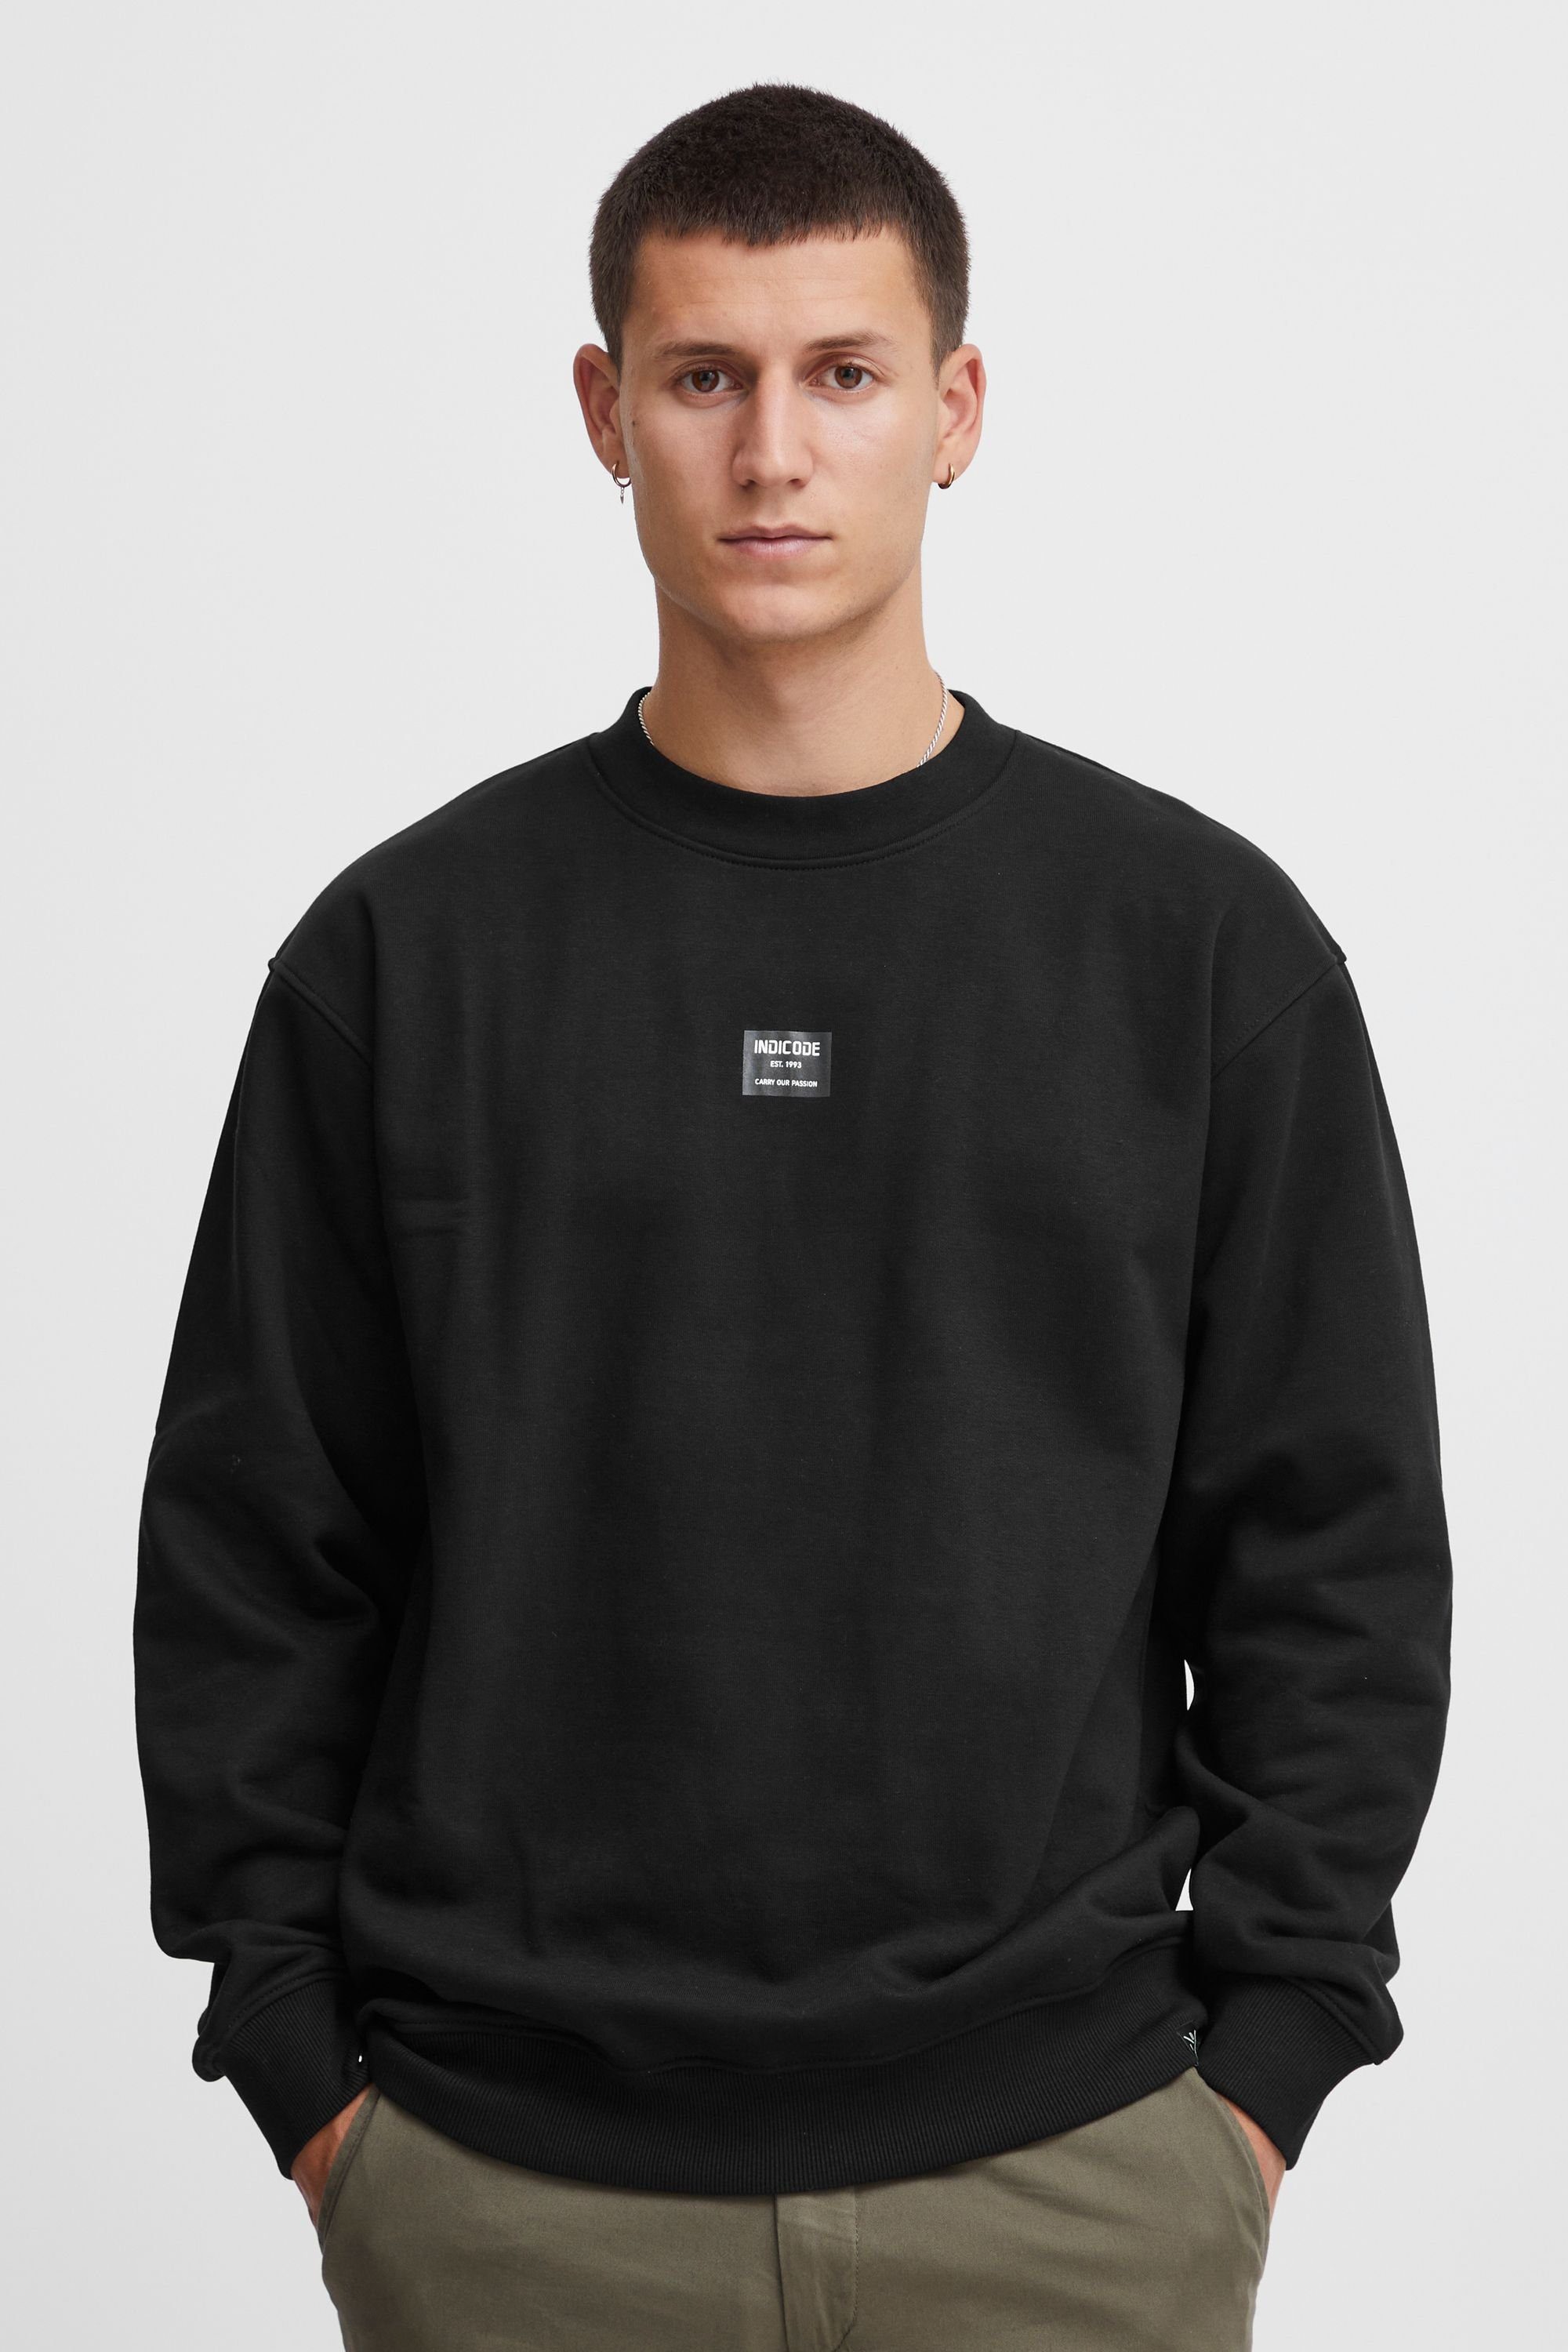 (999) Black Indicode Sweatshirt